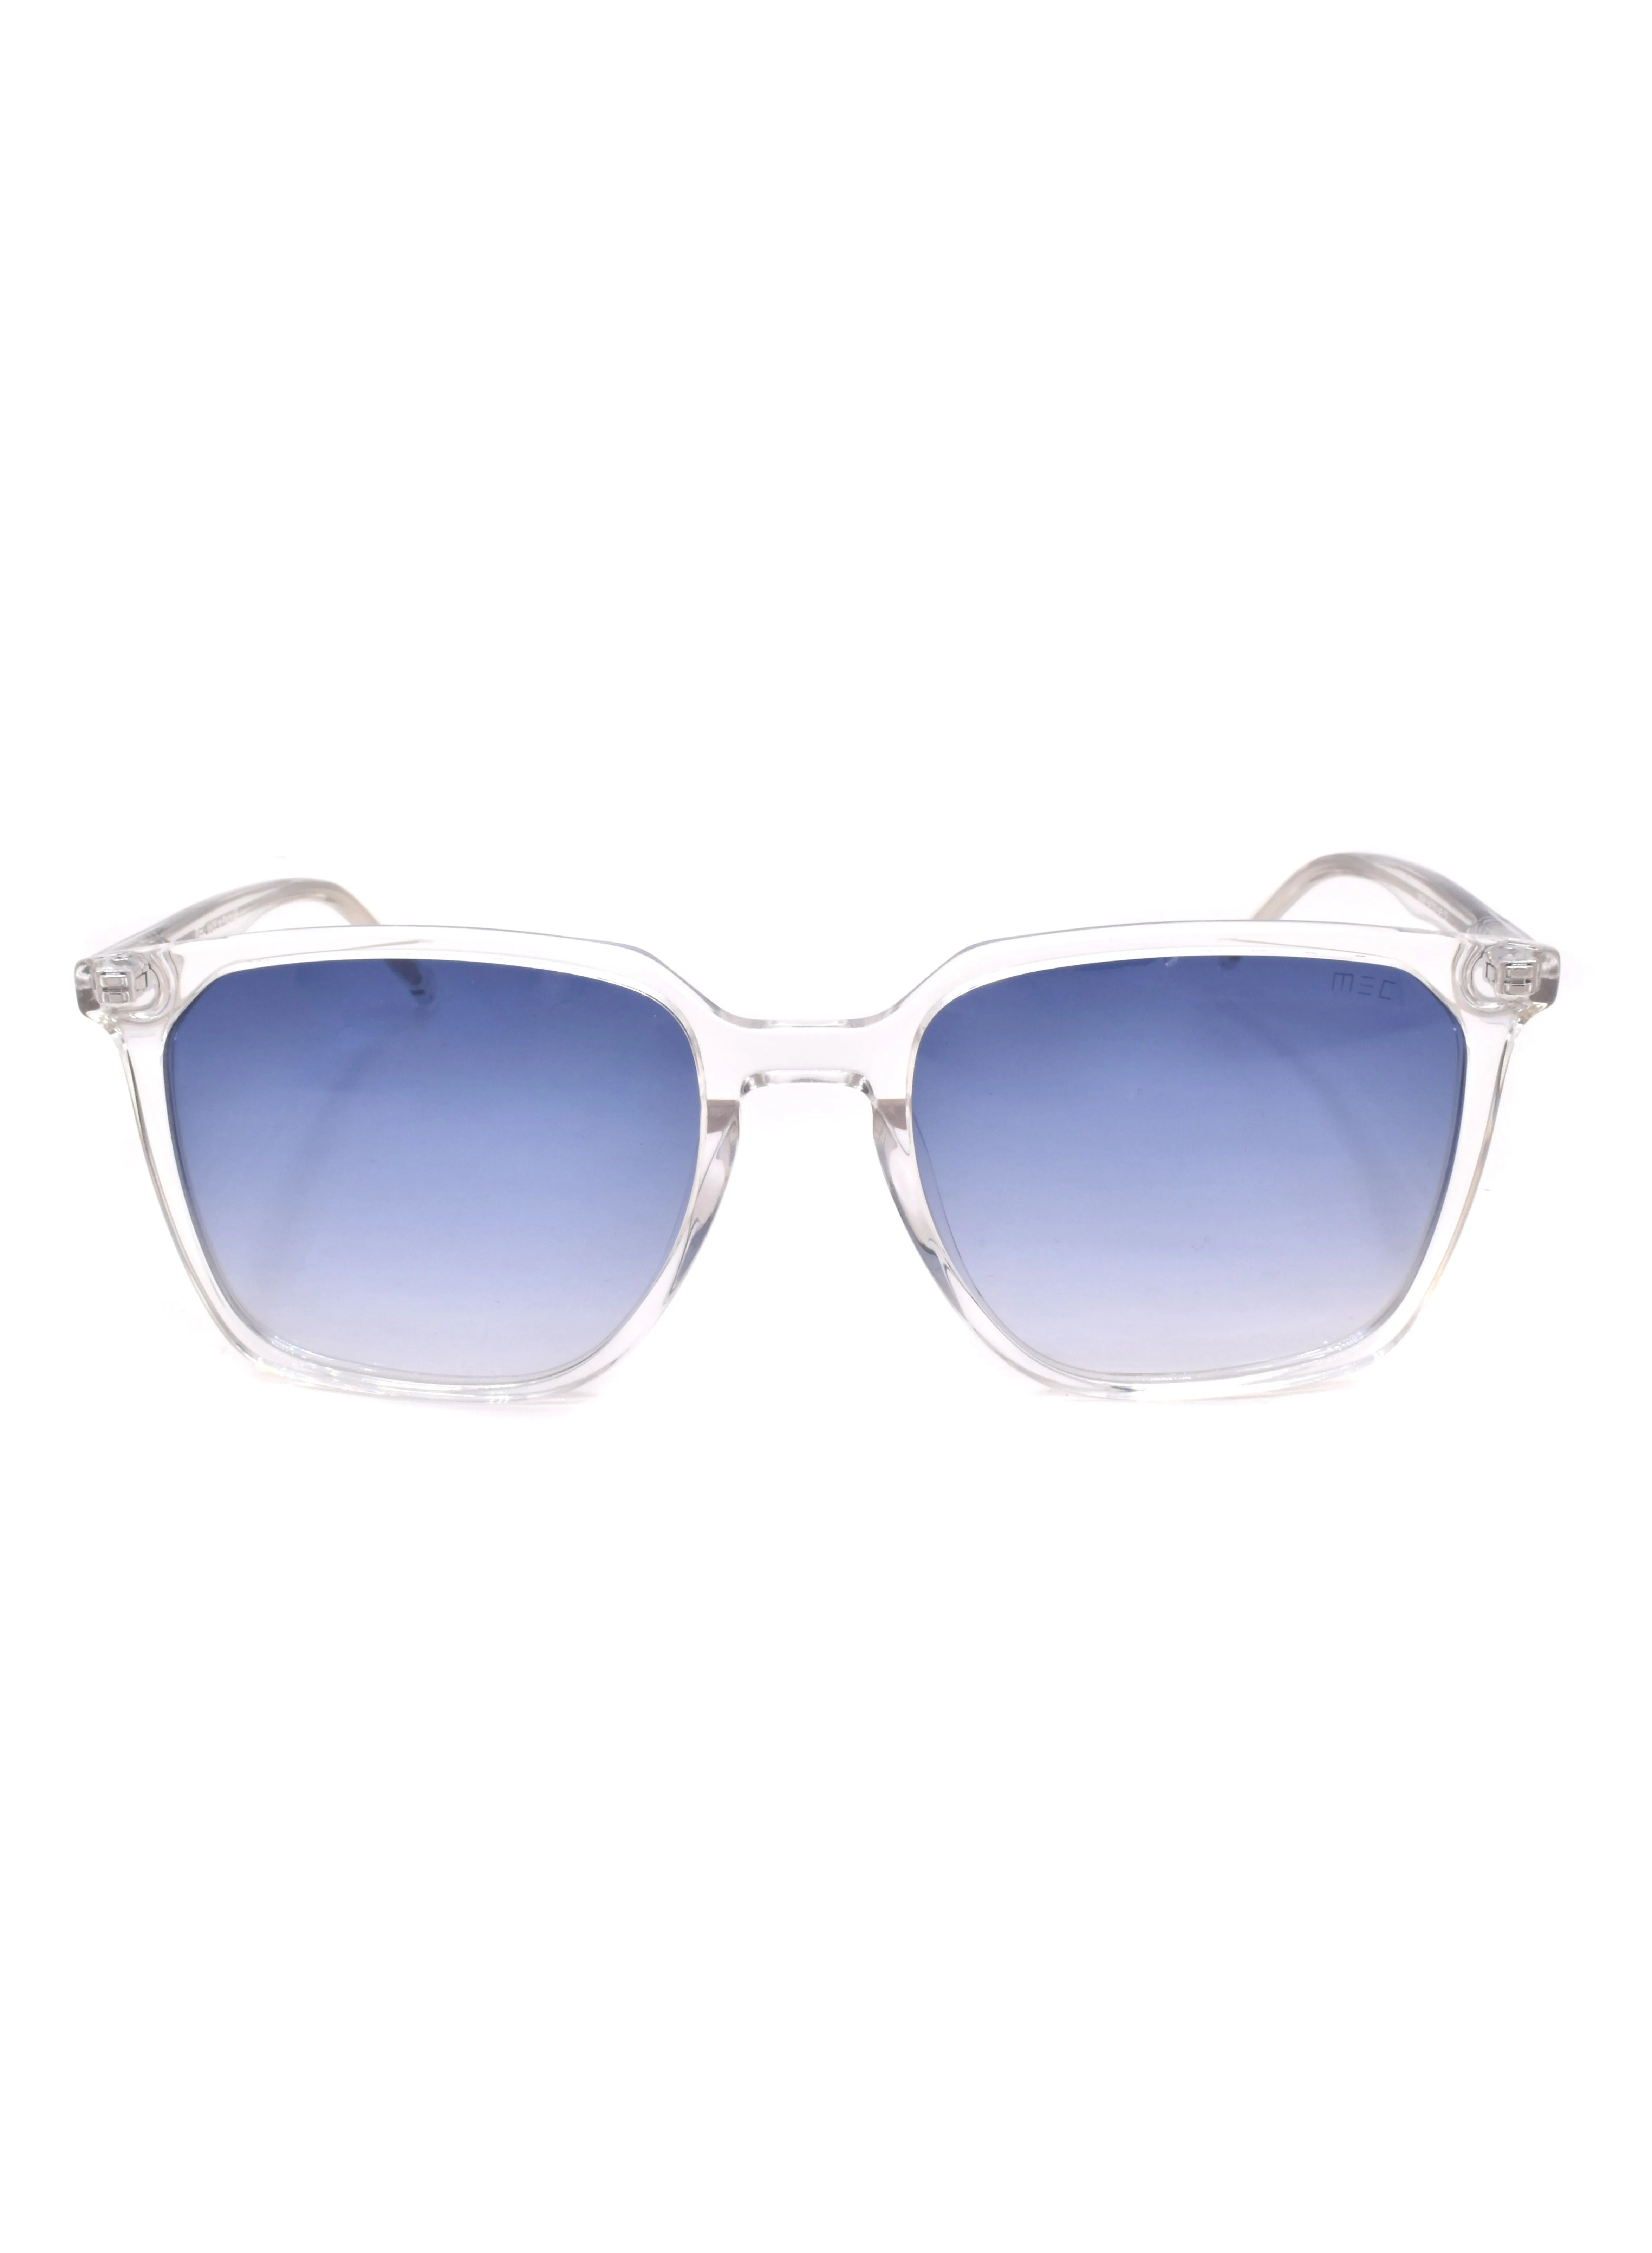 MEC Full Rim Square Sunglasses with Nose Pads 89945-C2